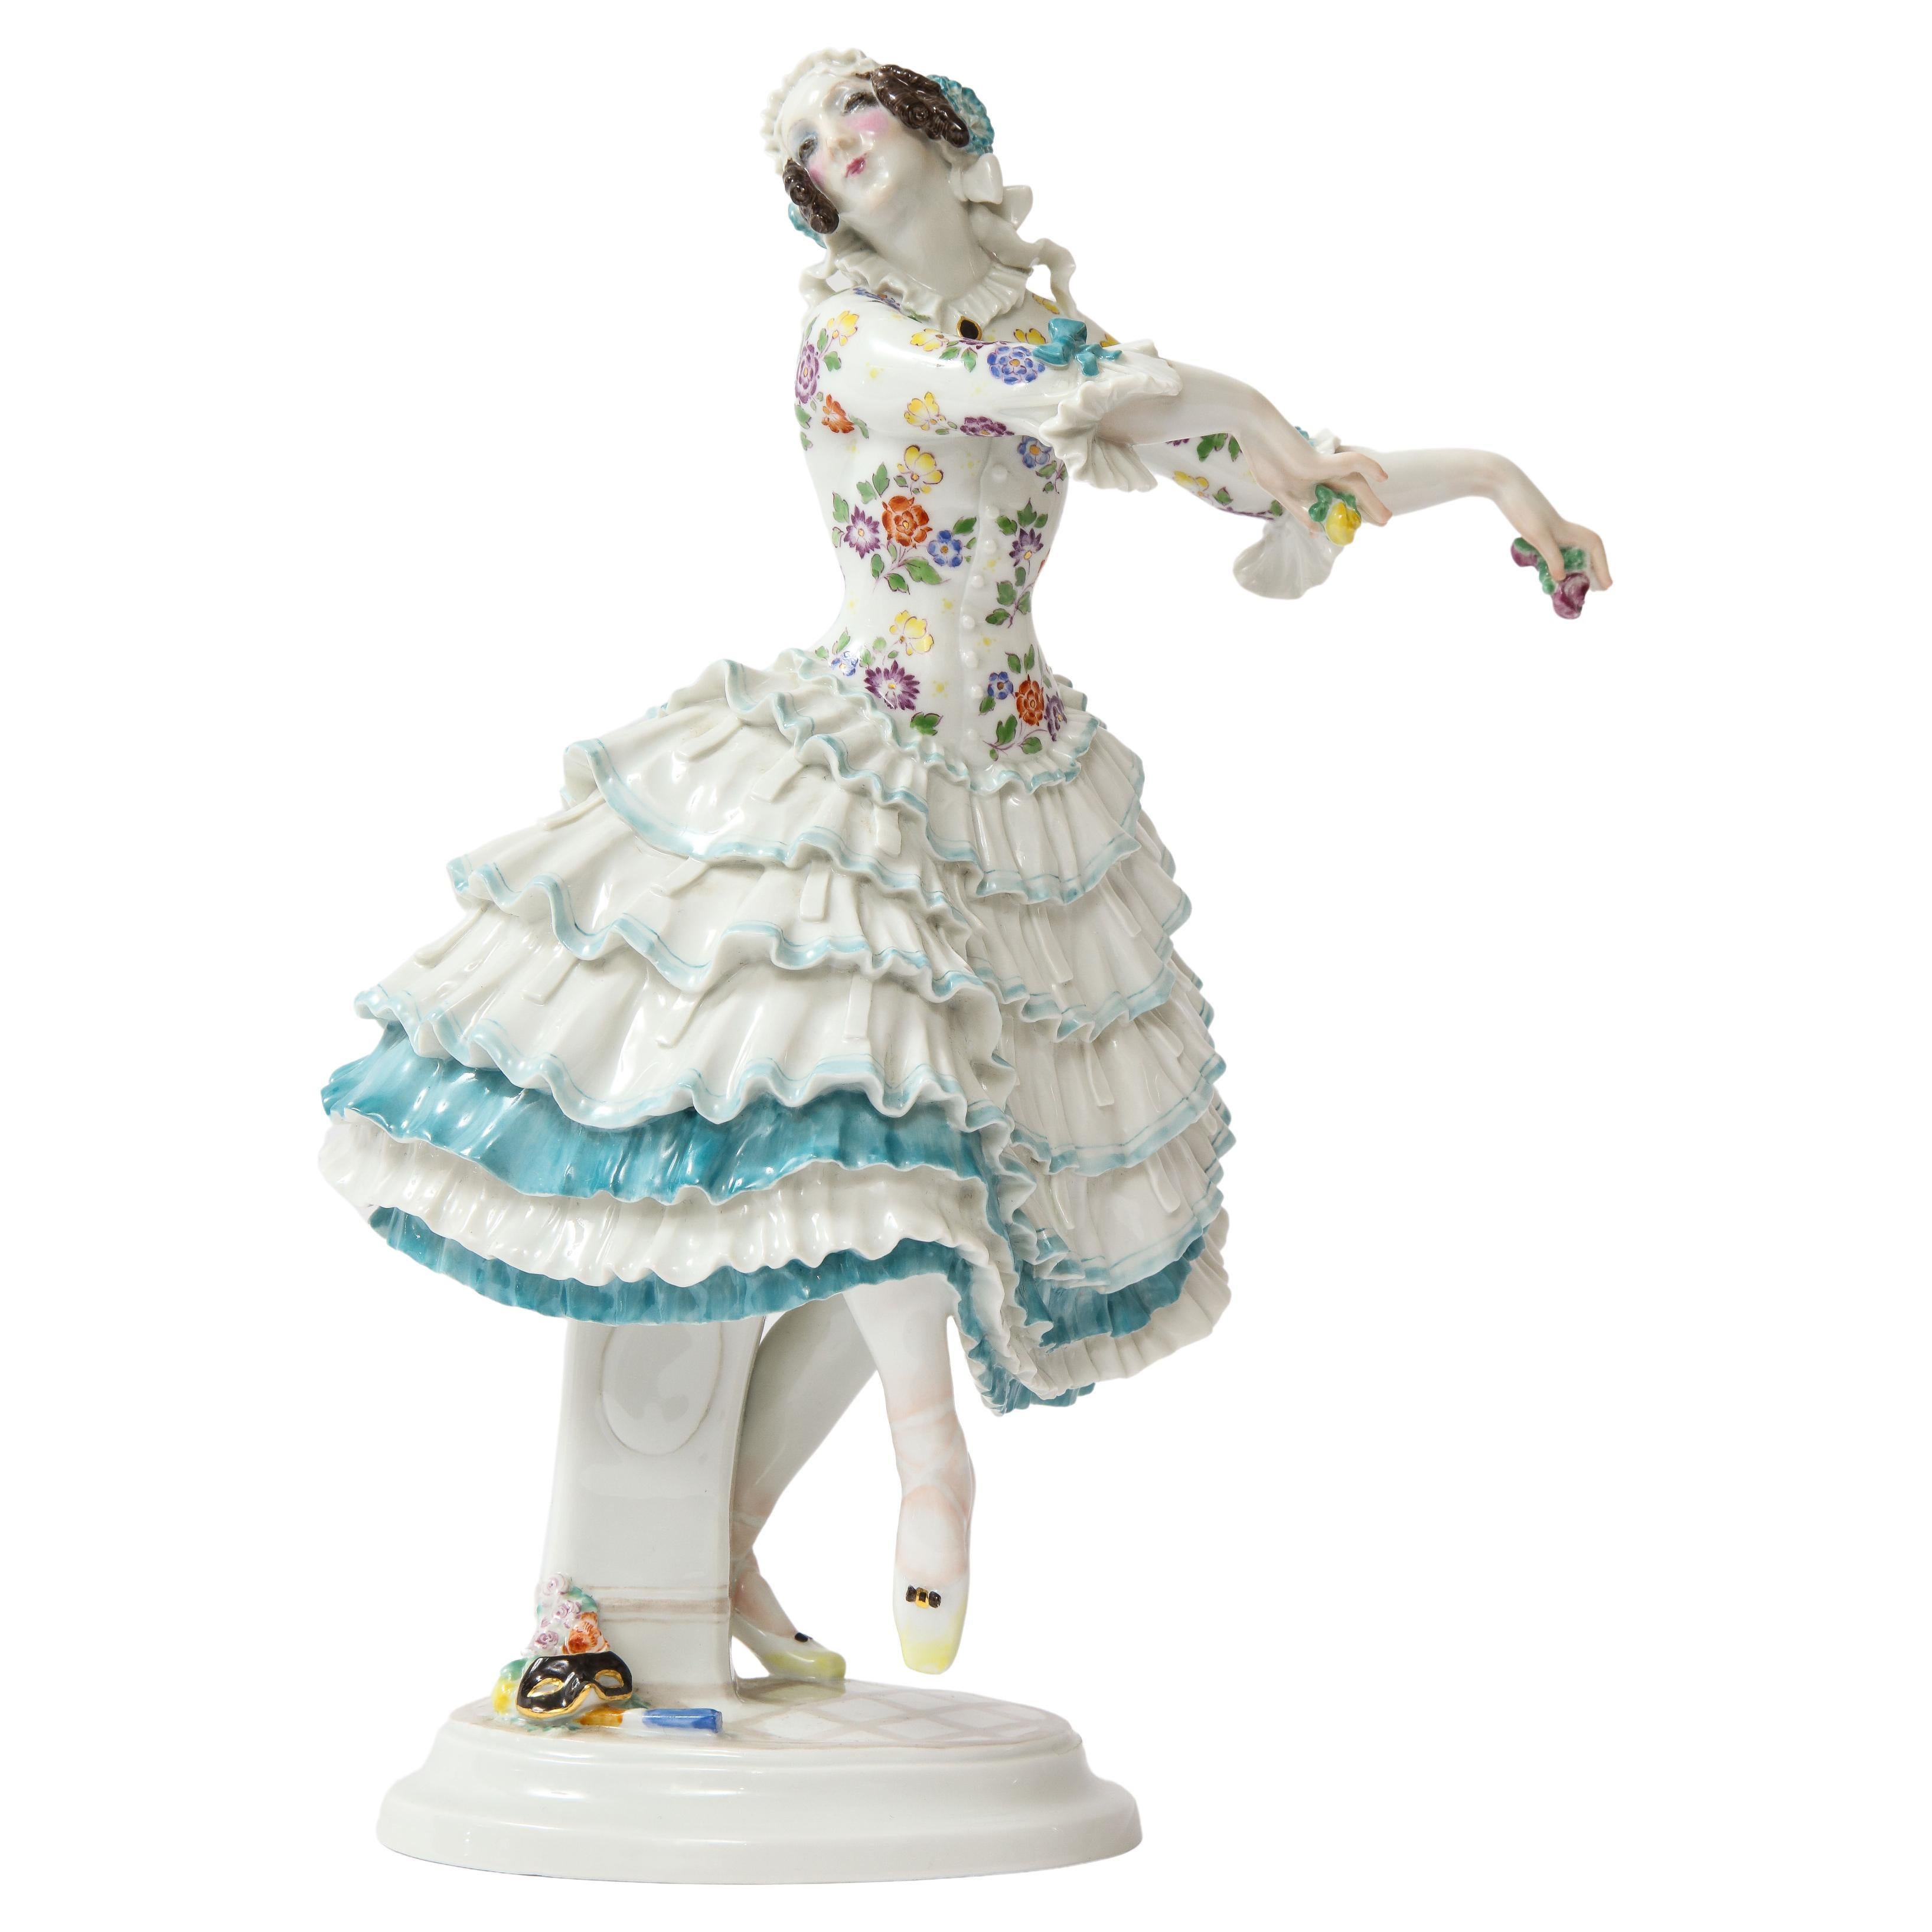 A 20th C. Meissen Ballet Dancer "Chiarina" from Russian Ballet by Paul Scheurich